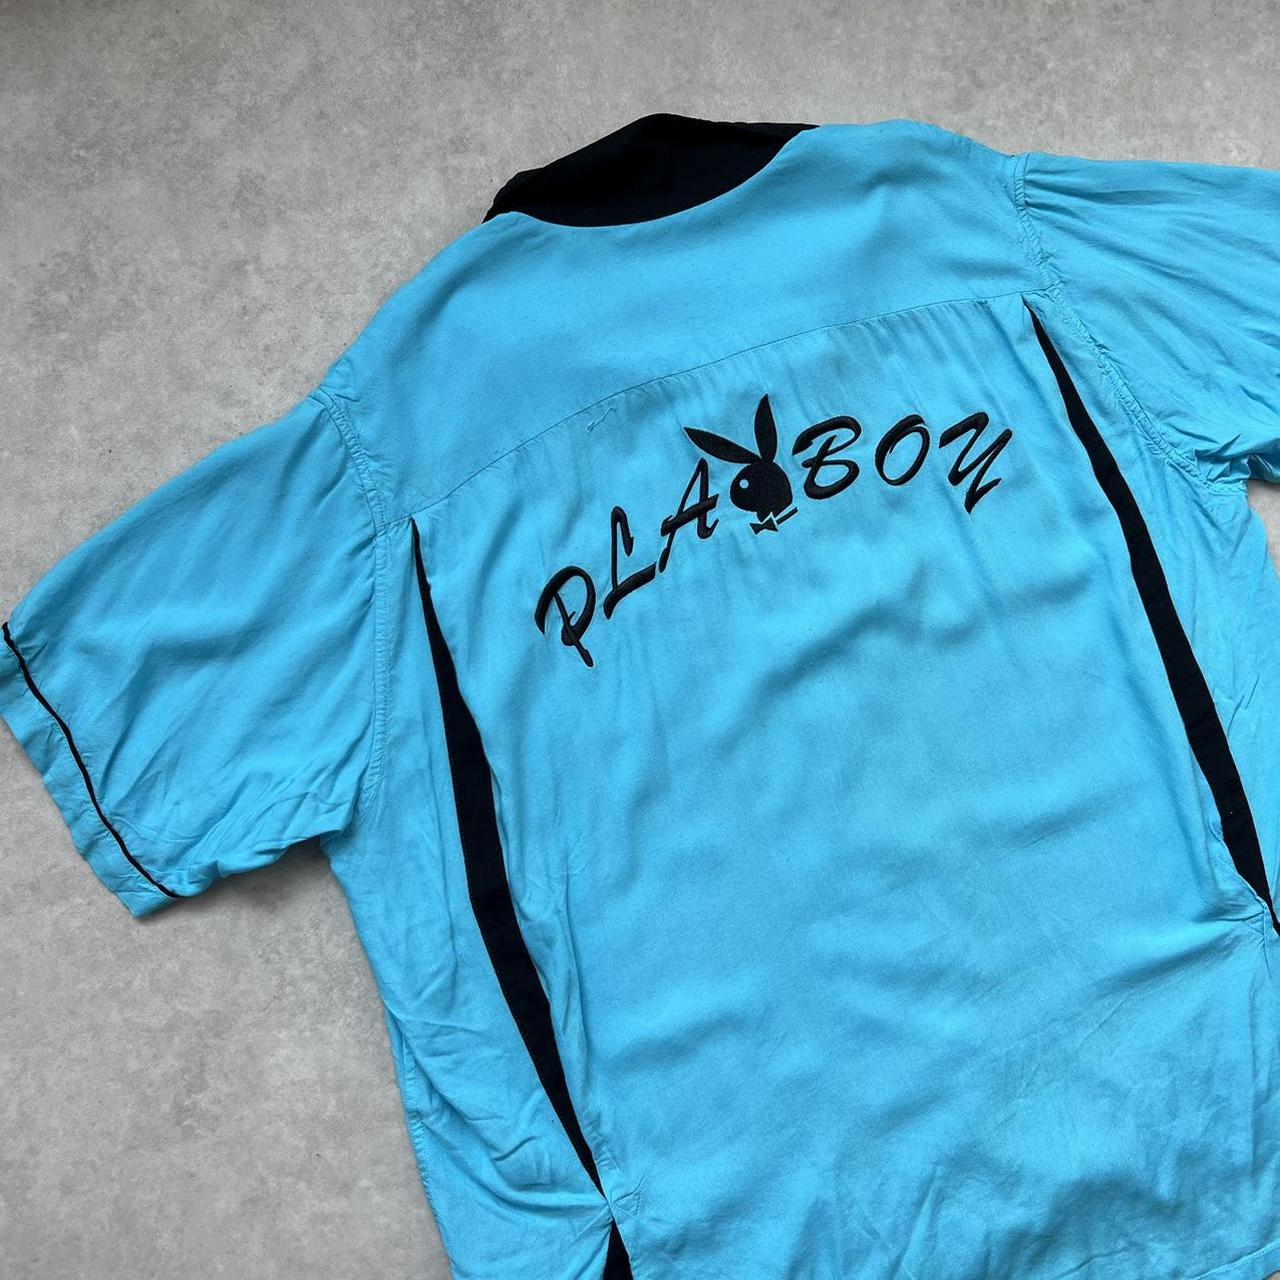 Supreme x Playboy Rayon Shirt Size XL Great... - Depop